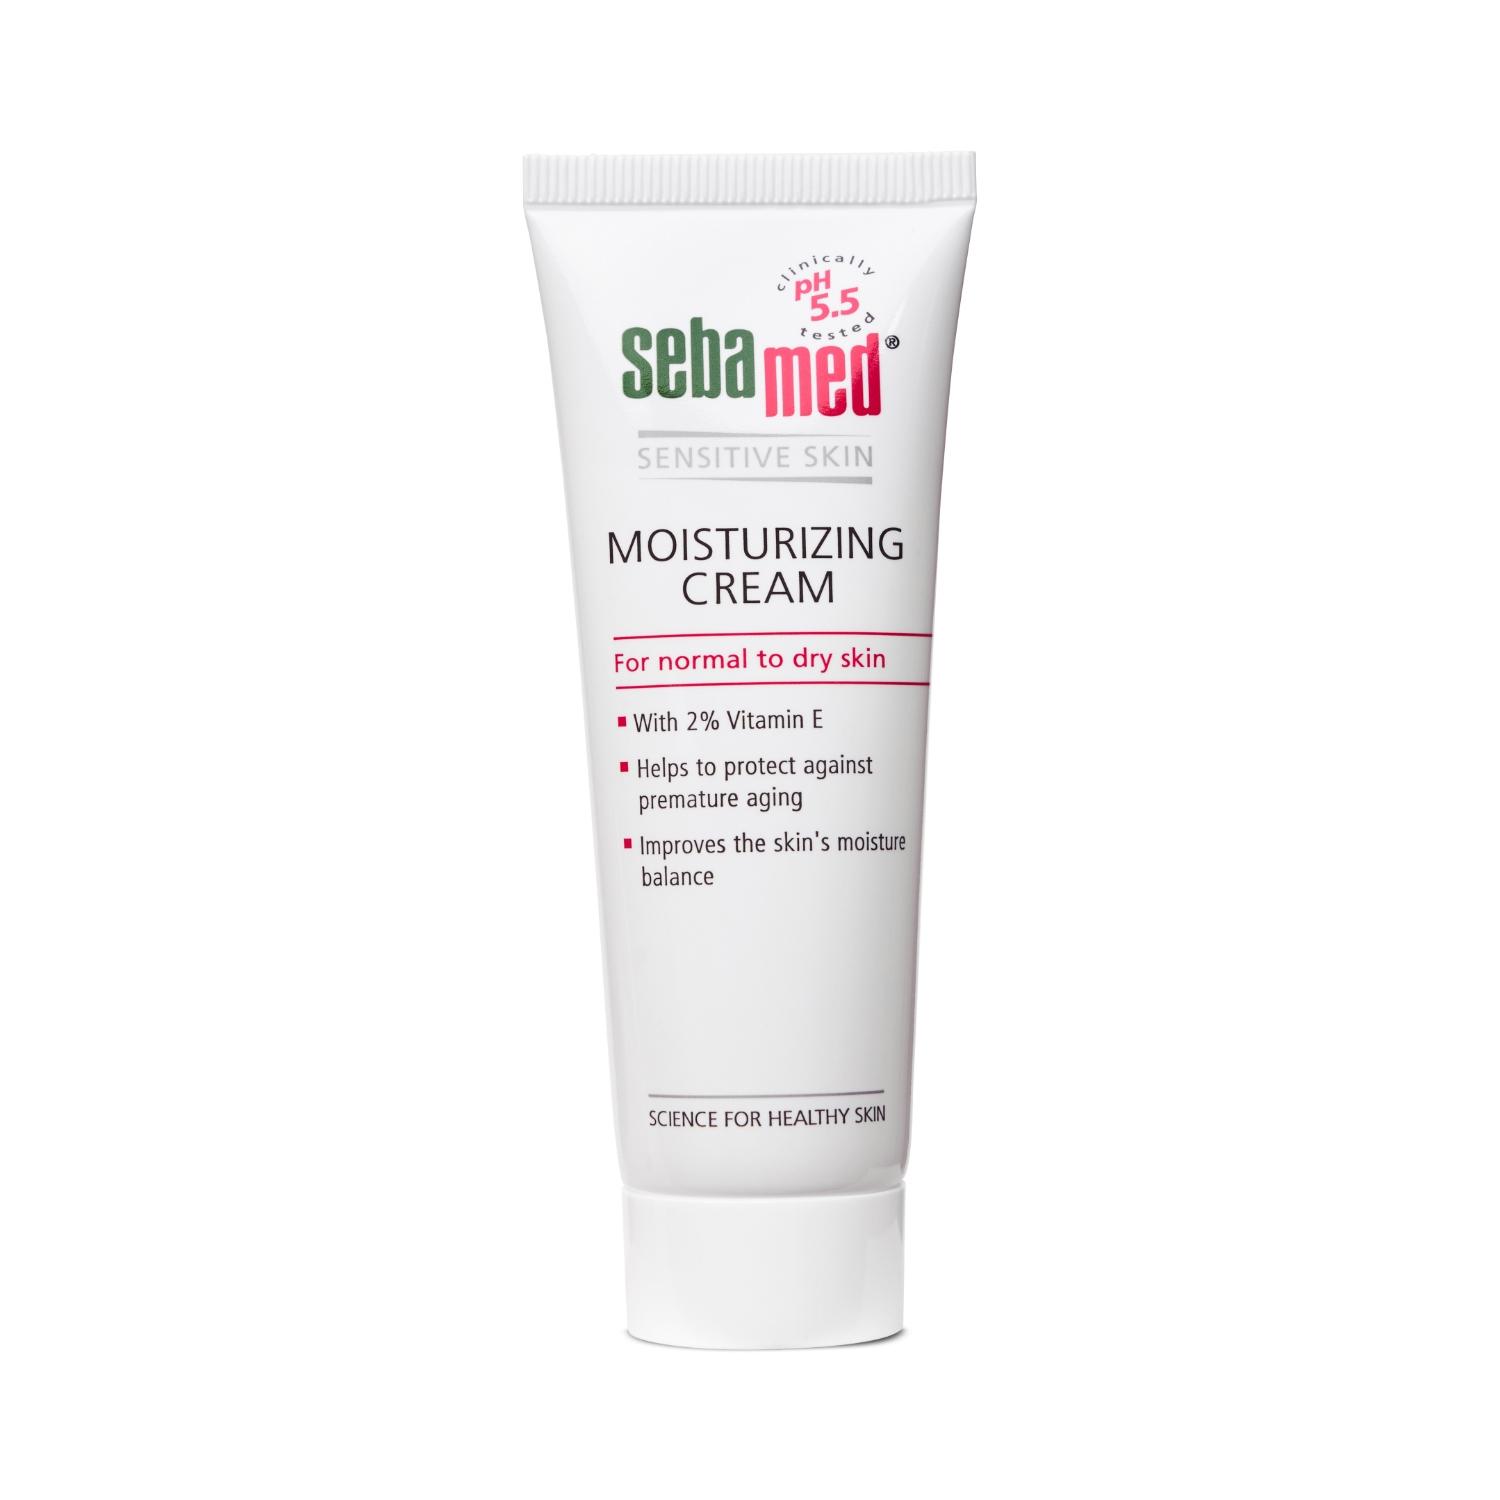 sebamed moisturizing cream (50ml)